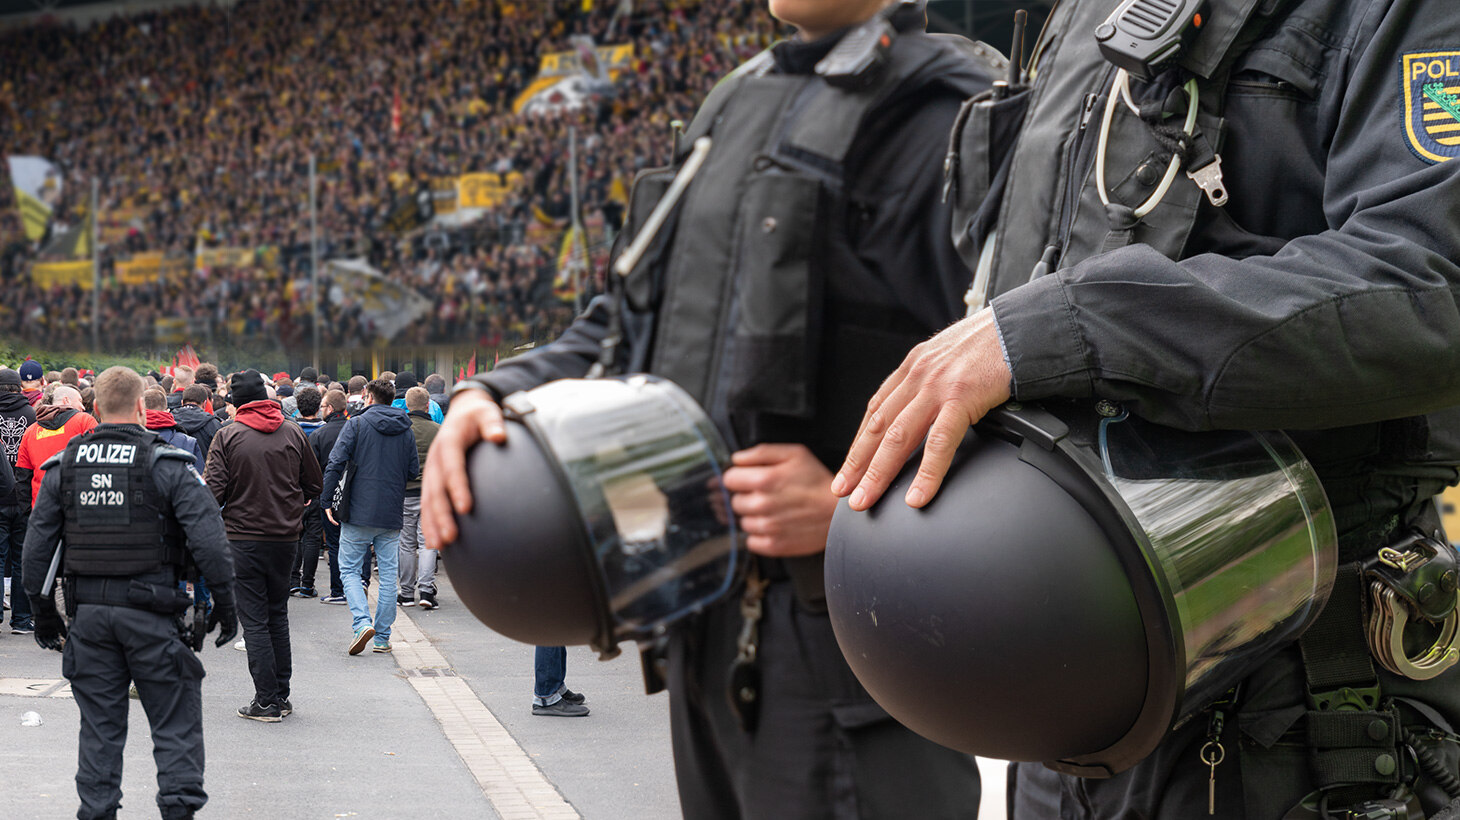 Polizisten mit Helmen am Koppel im Vordergrund, dahinter das Stadion.